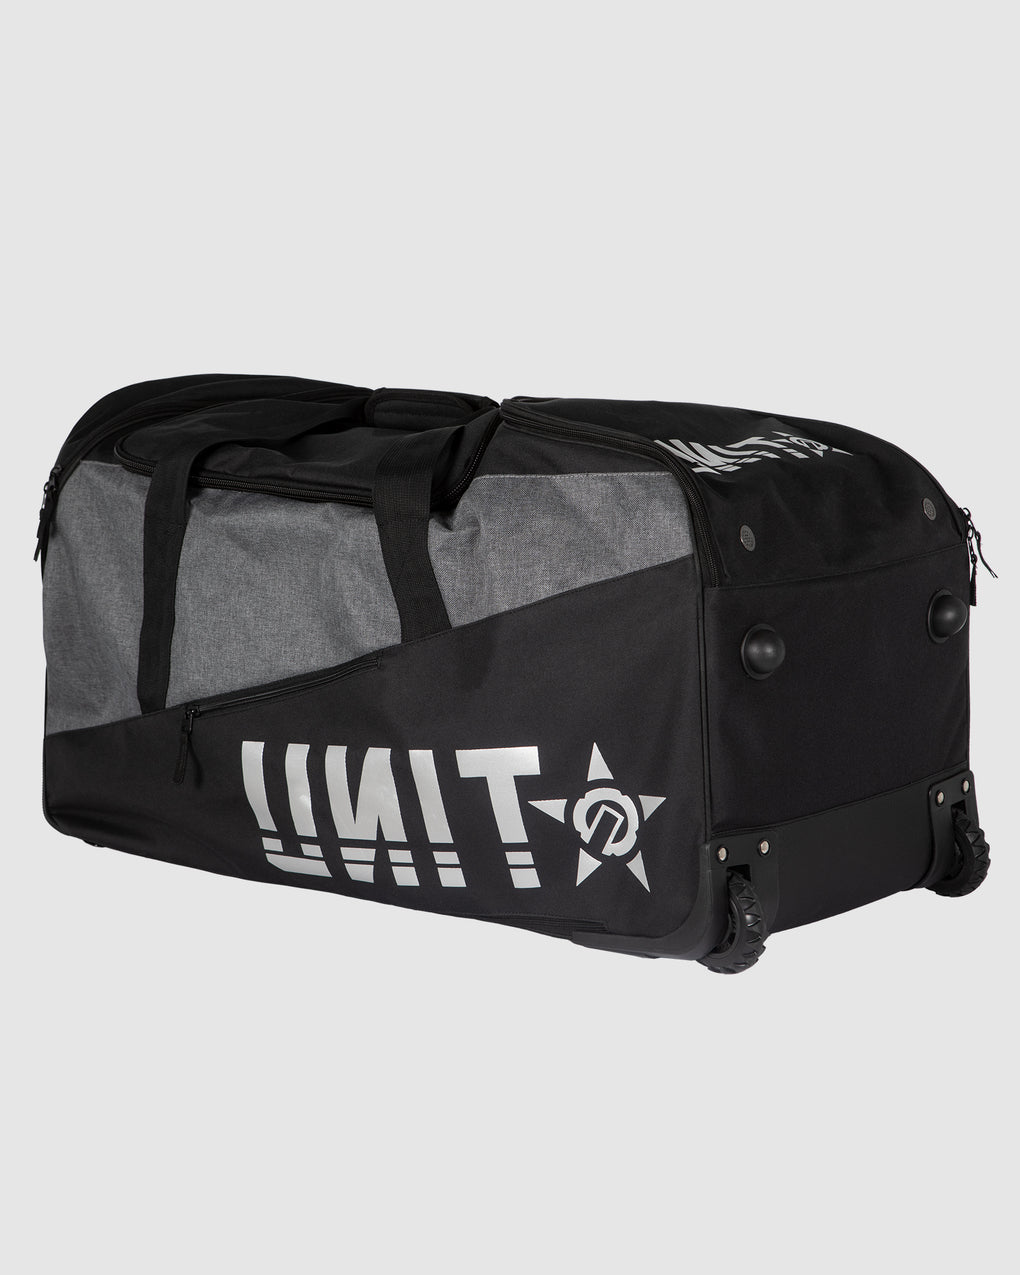 UNIT Departure Gear Bag